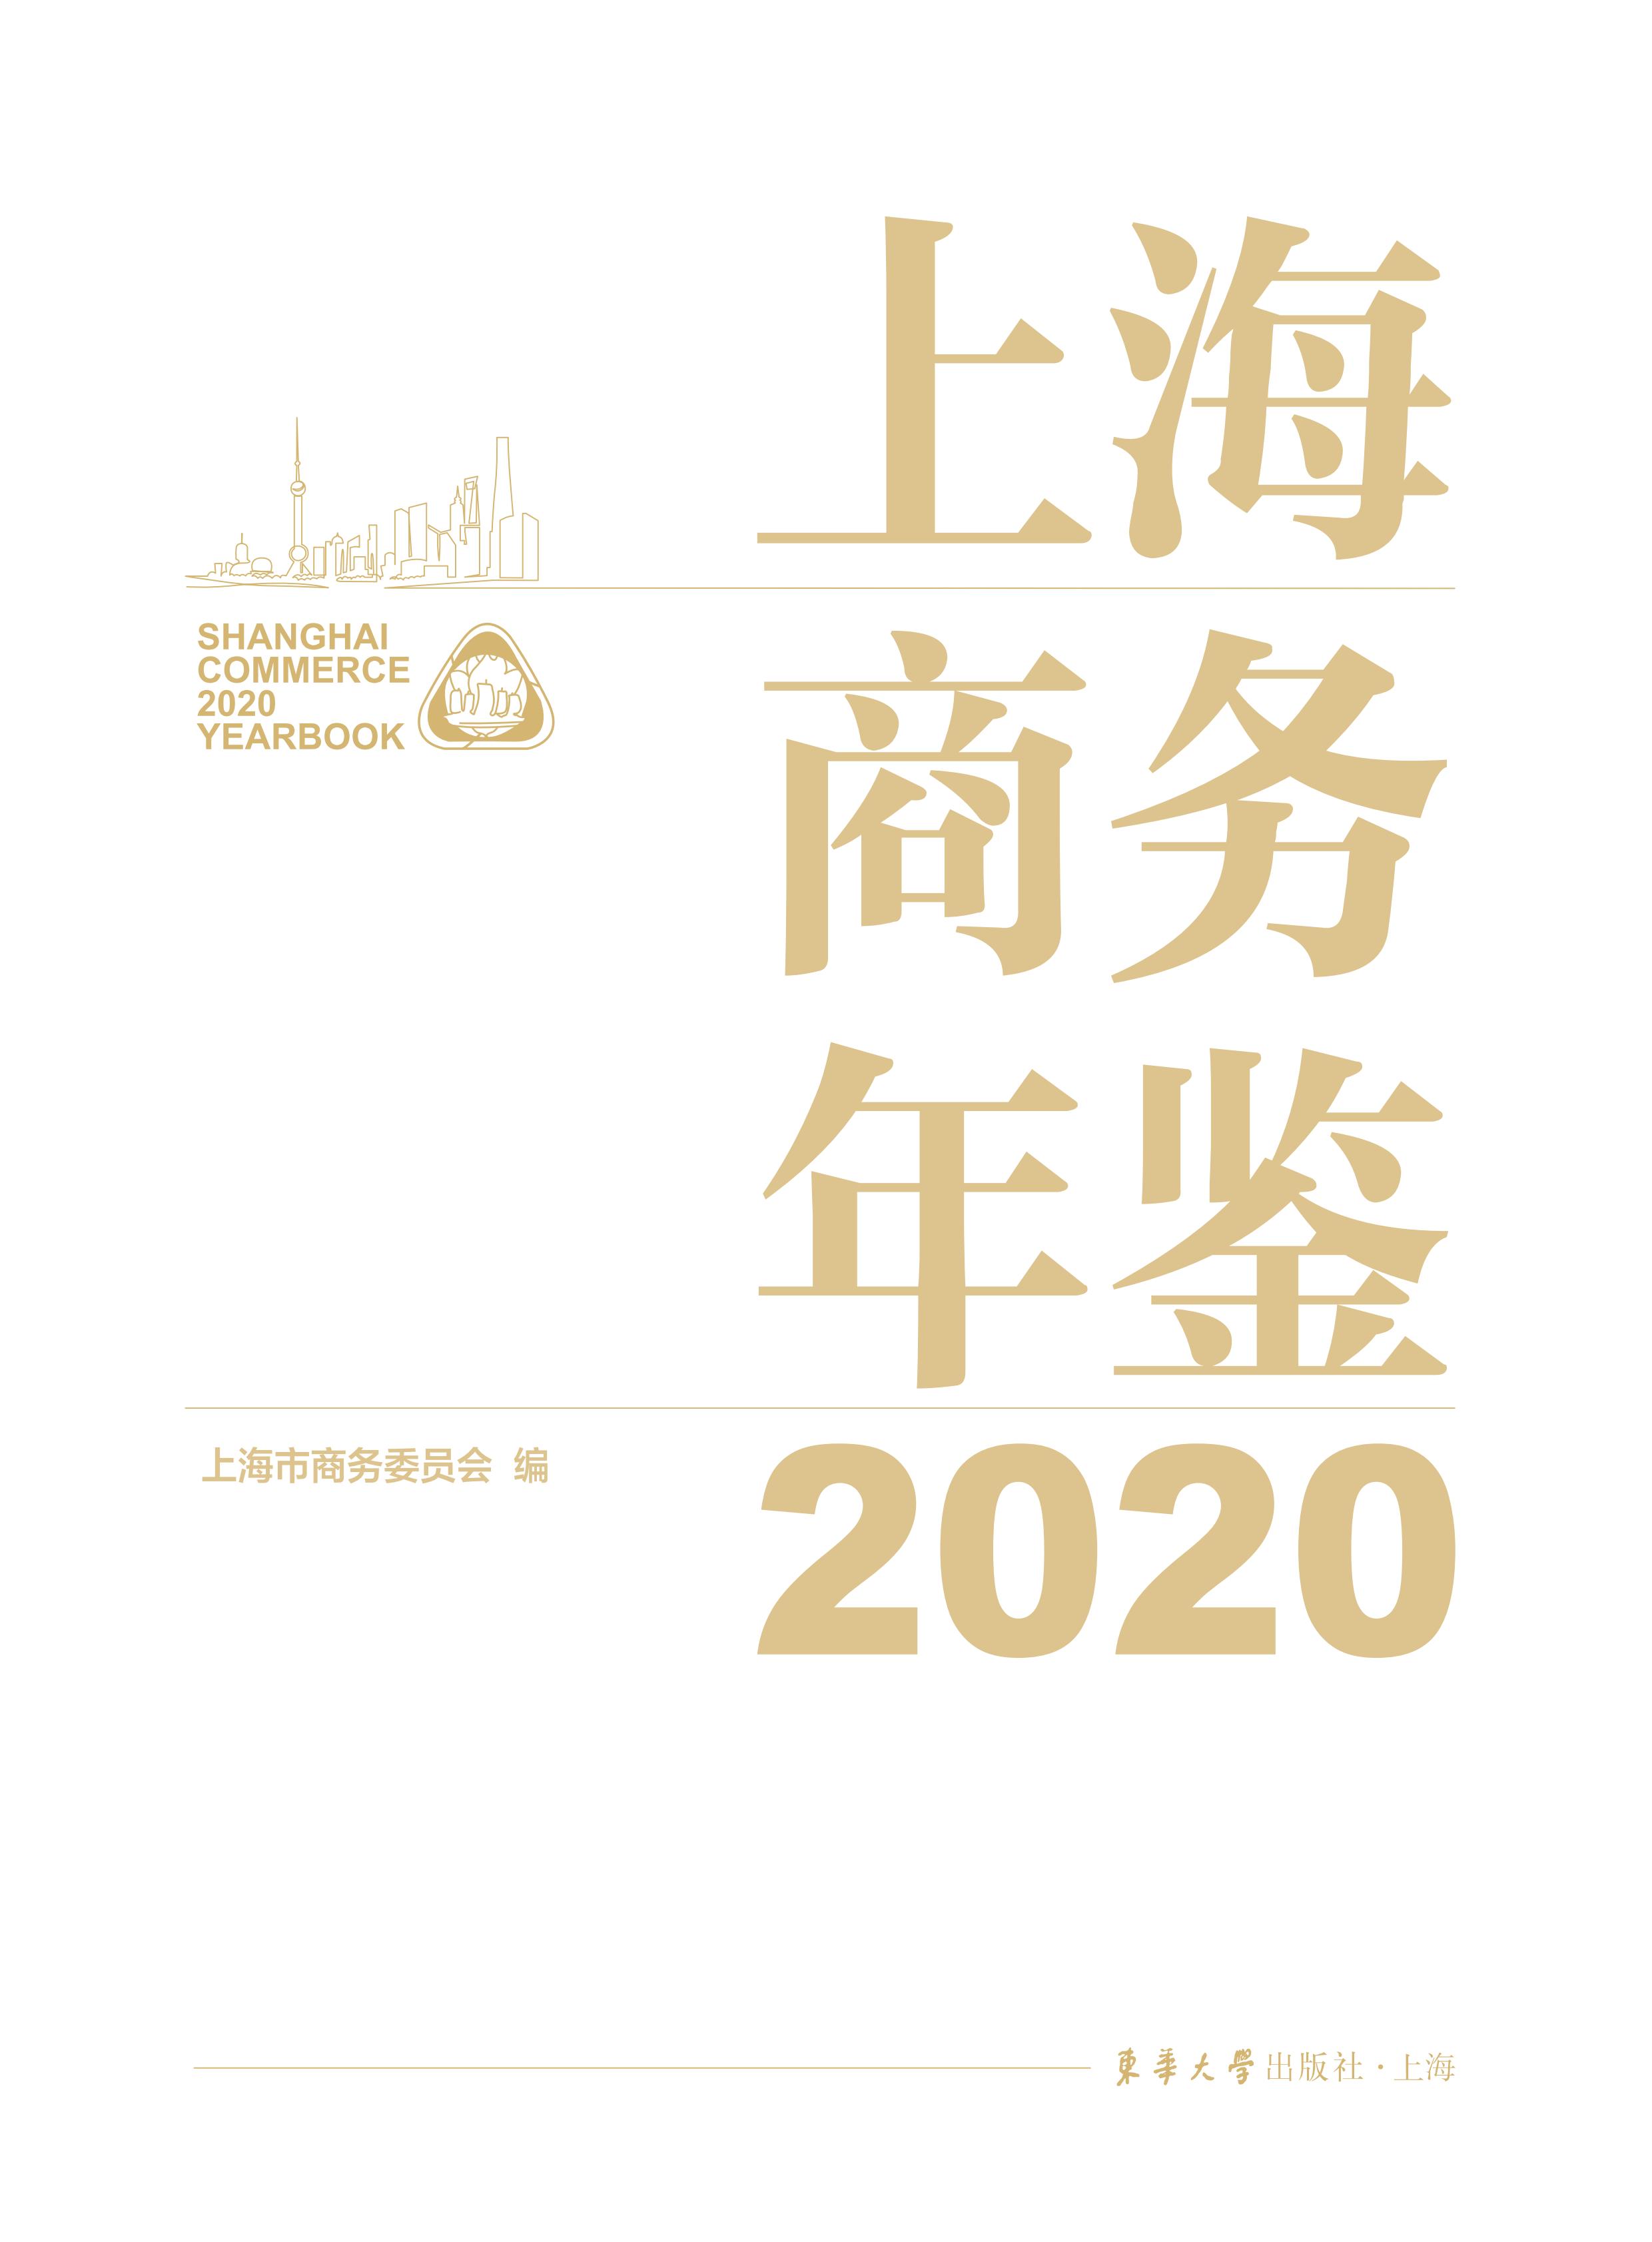 上海商务年鉴2020公开内容_01.jpg